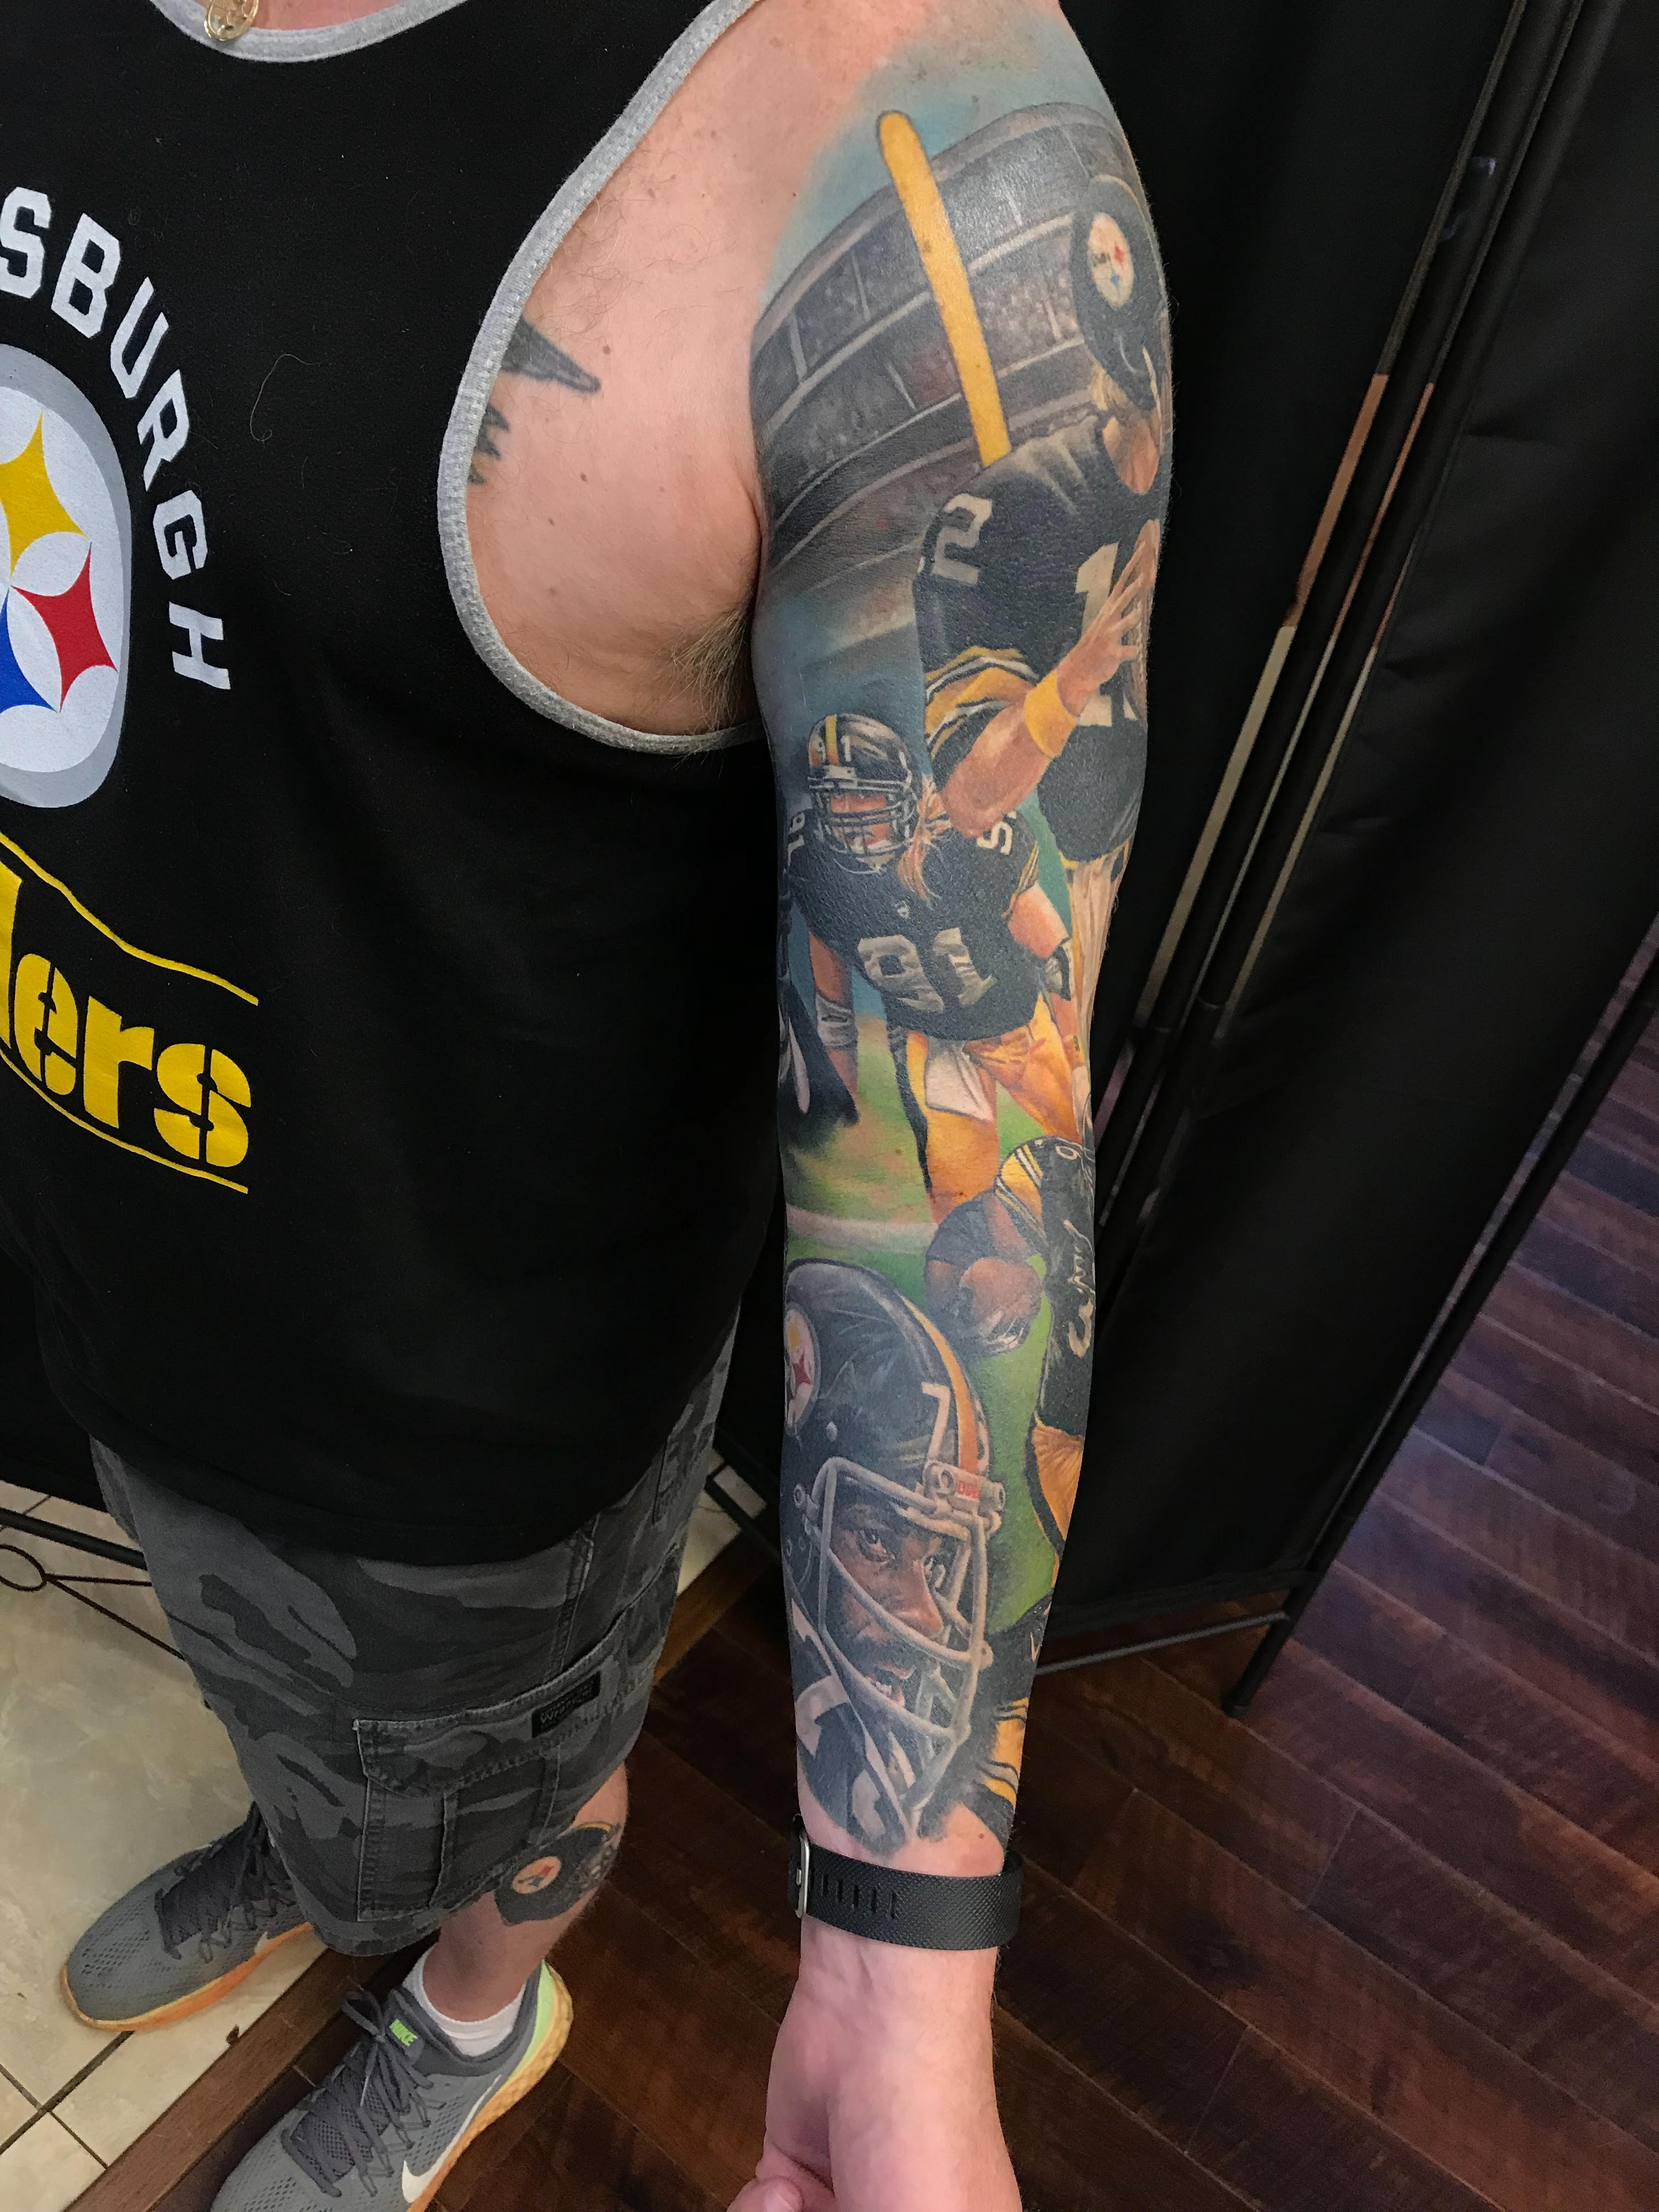 Steelers tattoo  Steelers tattoos Steelers Tattoos